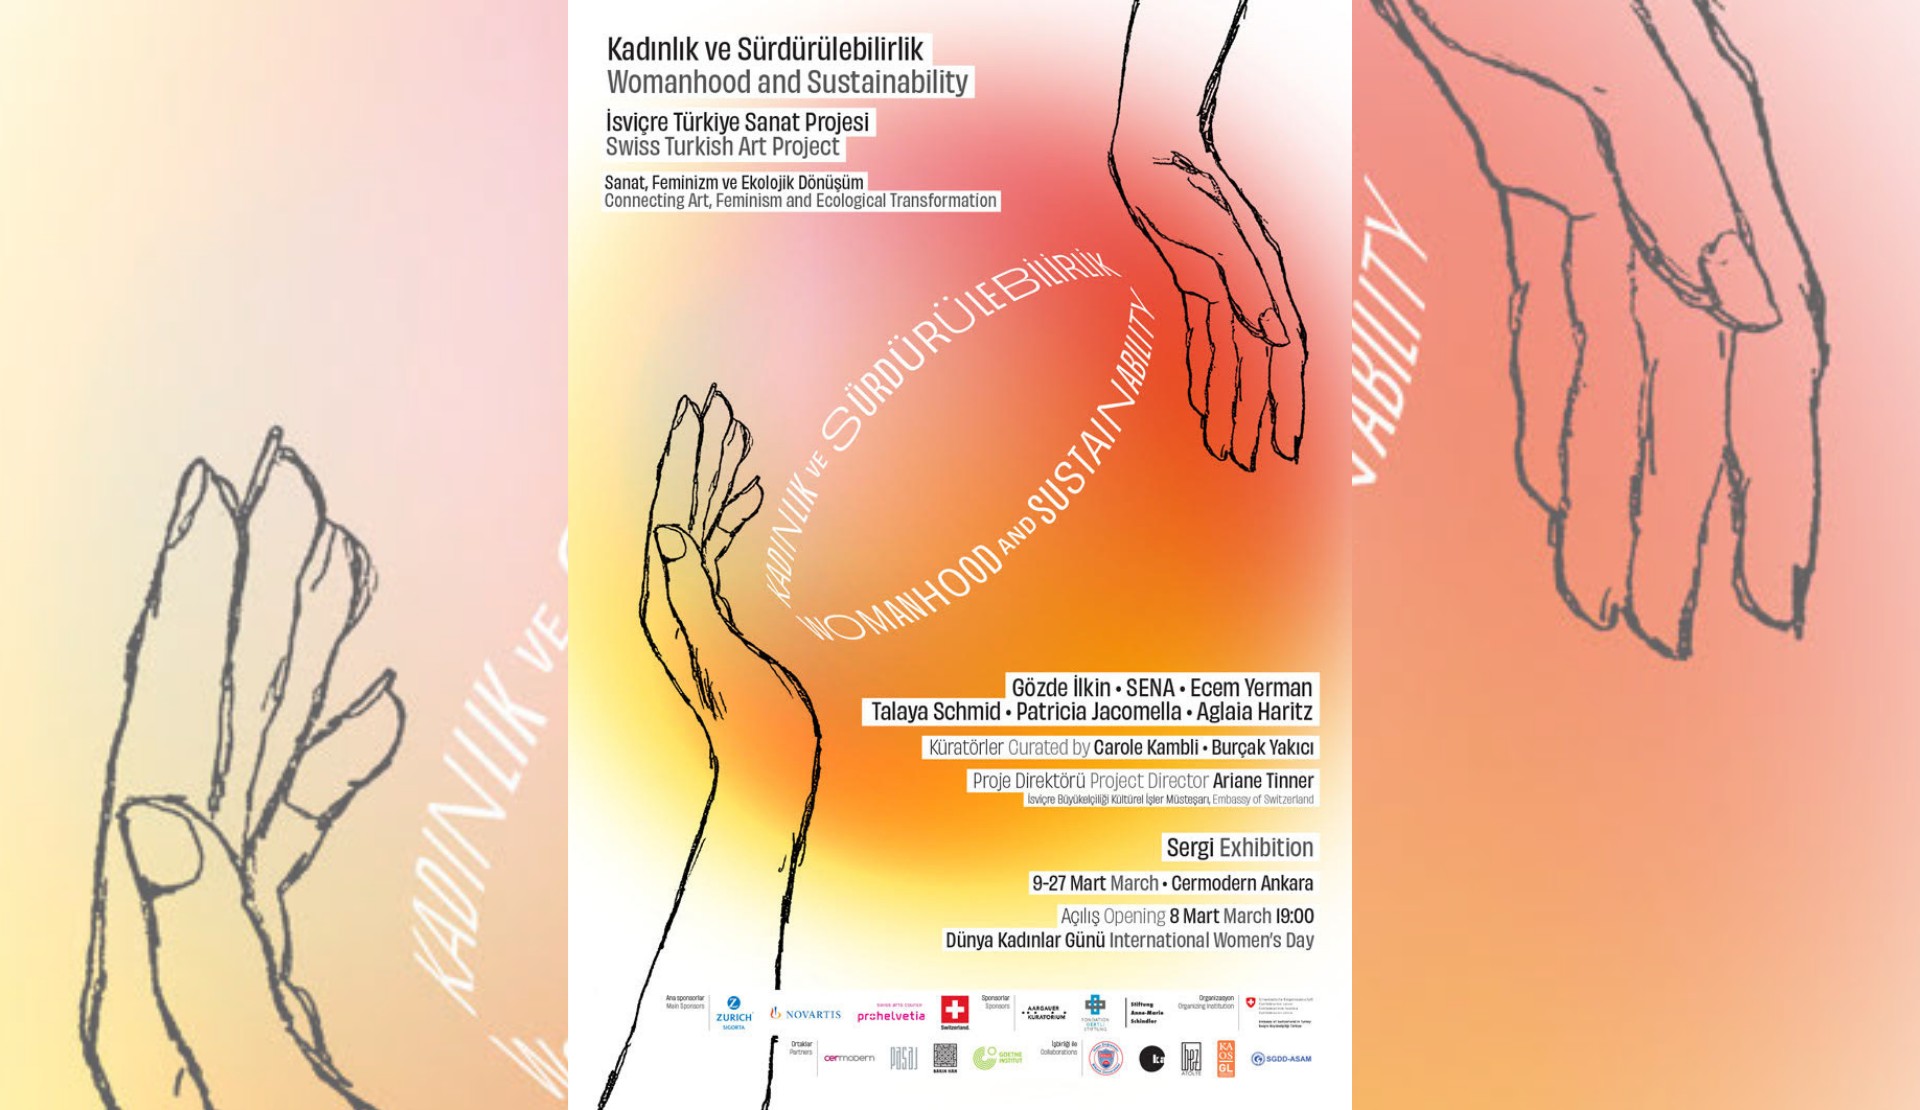 Sanat, Feminizm ve Ekolojik Dönüşüm sergisi 8 Mart’ta açılıyor Kaos GL - LGBTİ+ Haber Portalı